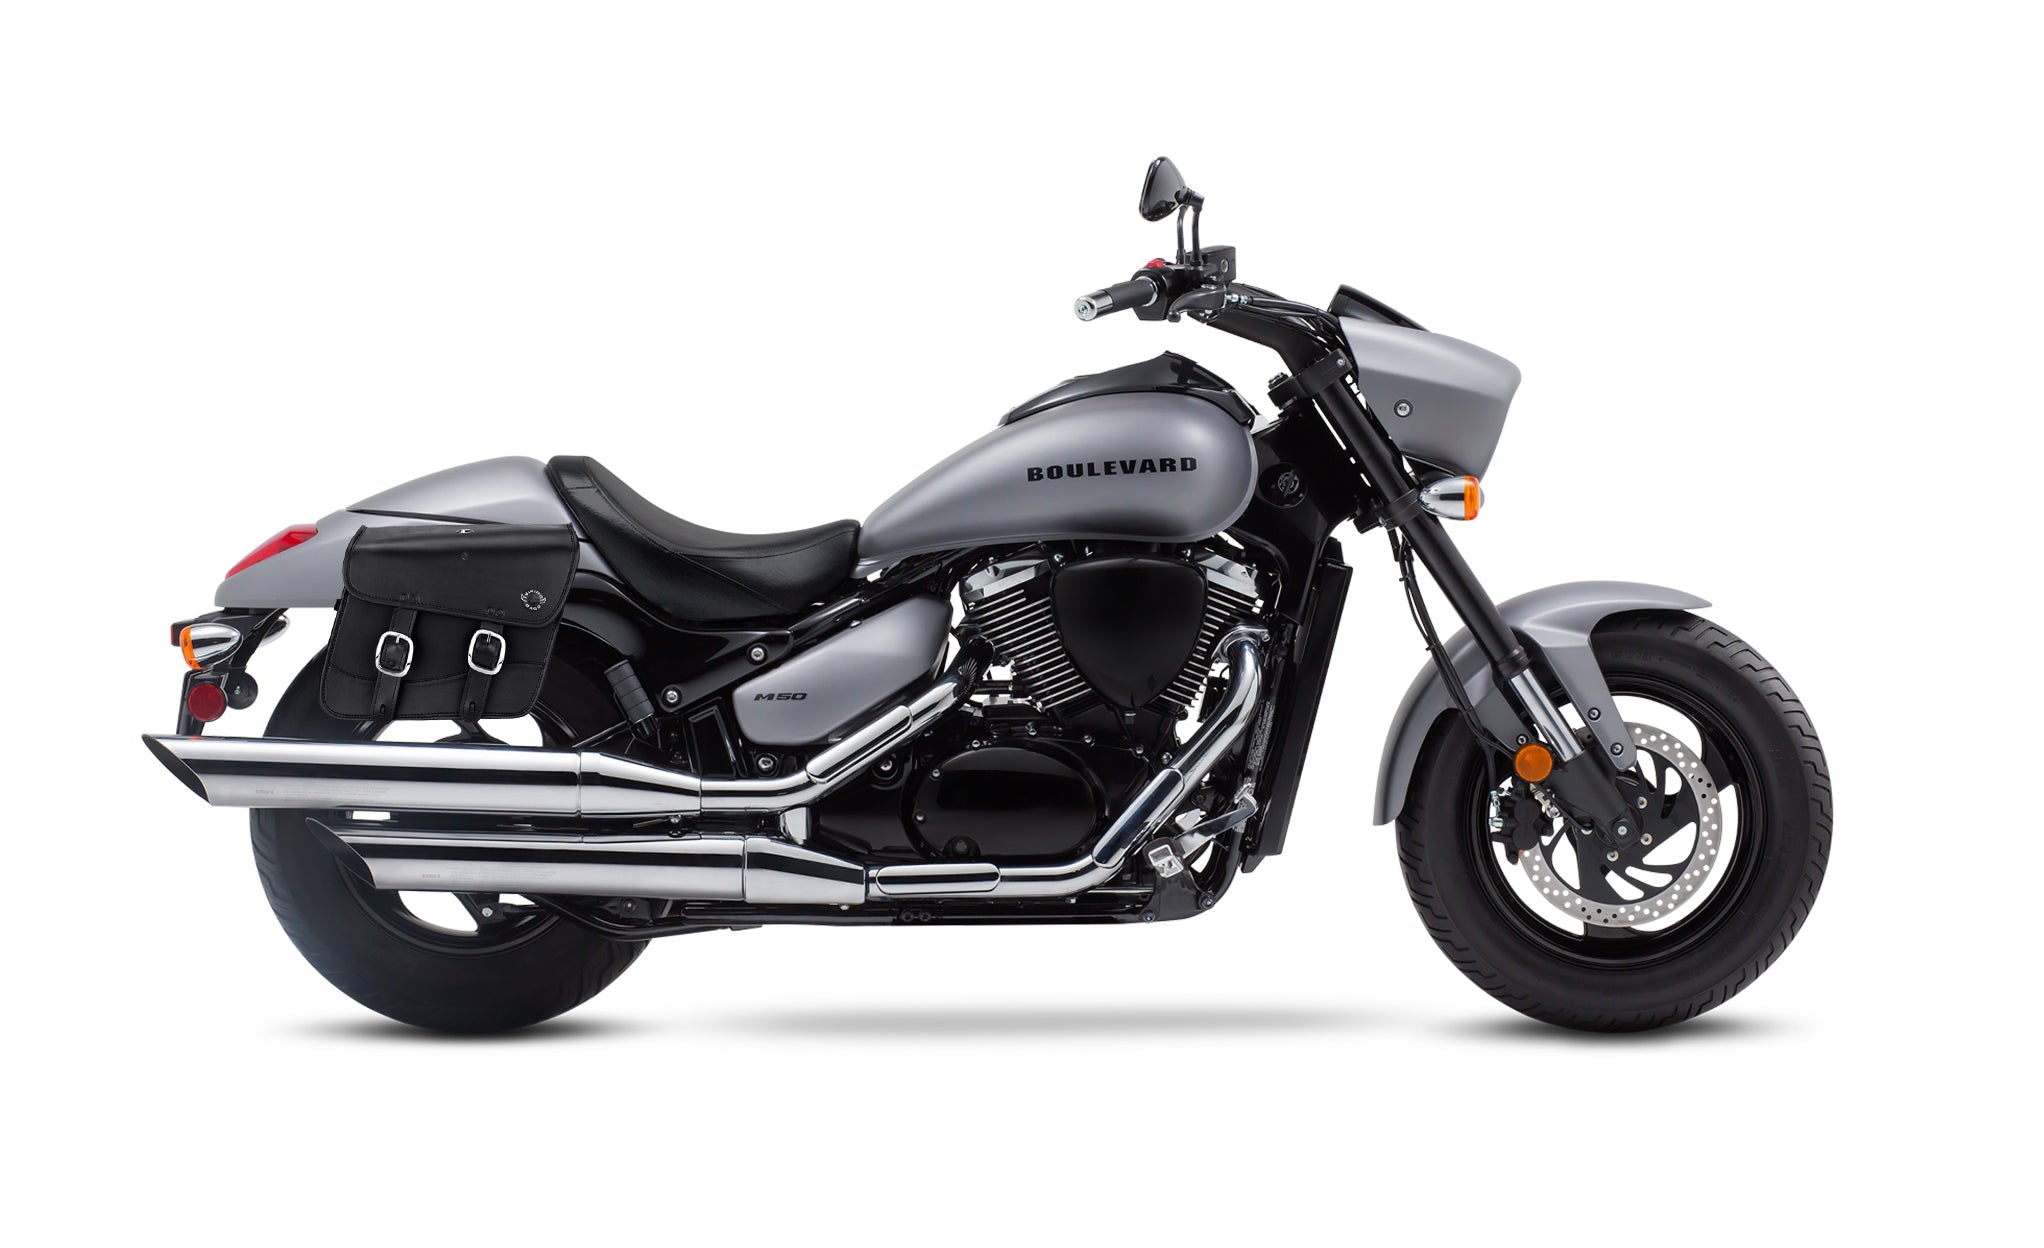 Viking Thor Medium Suzuki Boulevard M50 Vz800 Leather Motorcycle Saddlebags on Bike Photo @expand